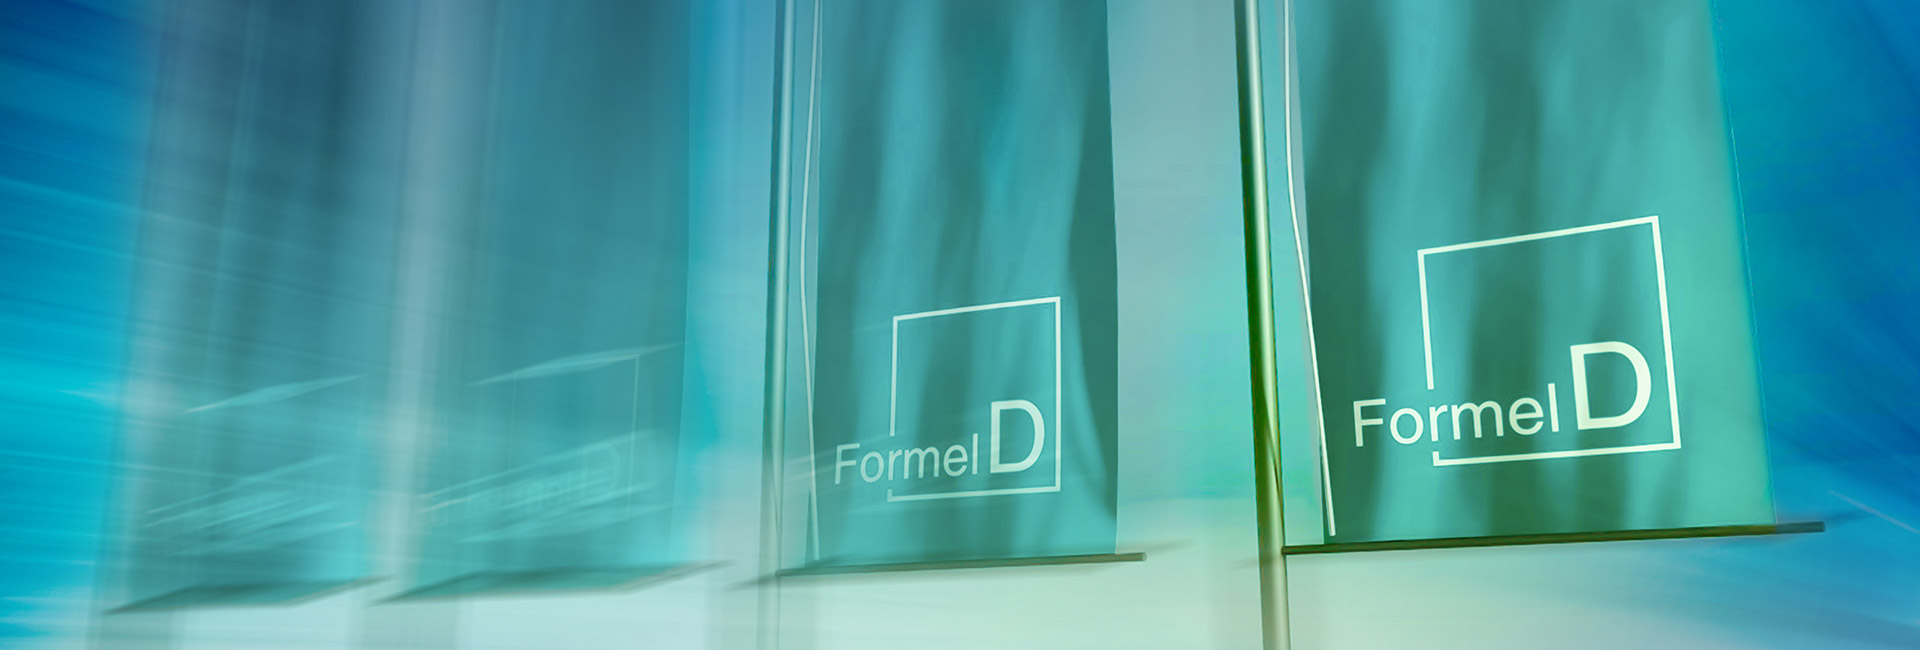 Sites | Formel D